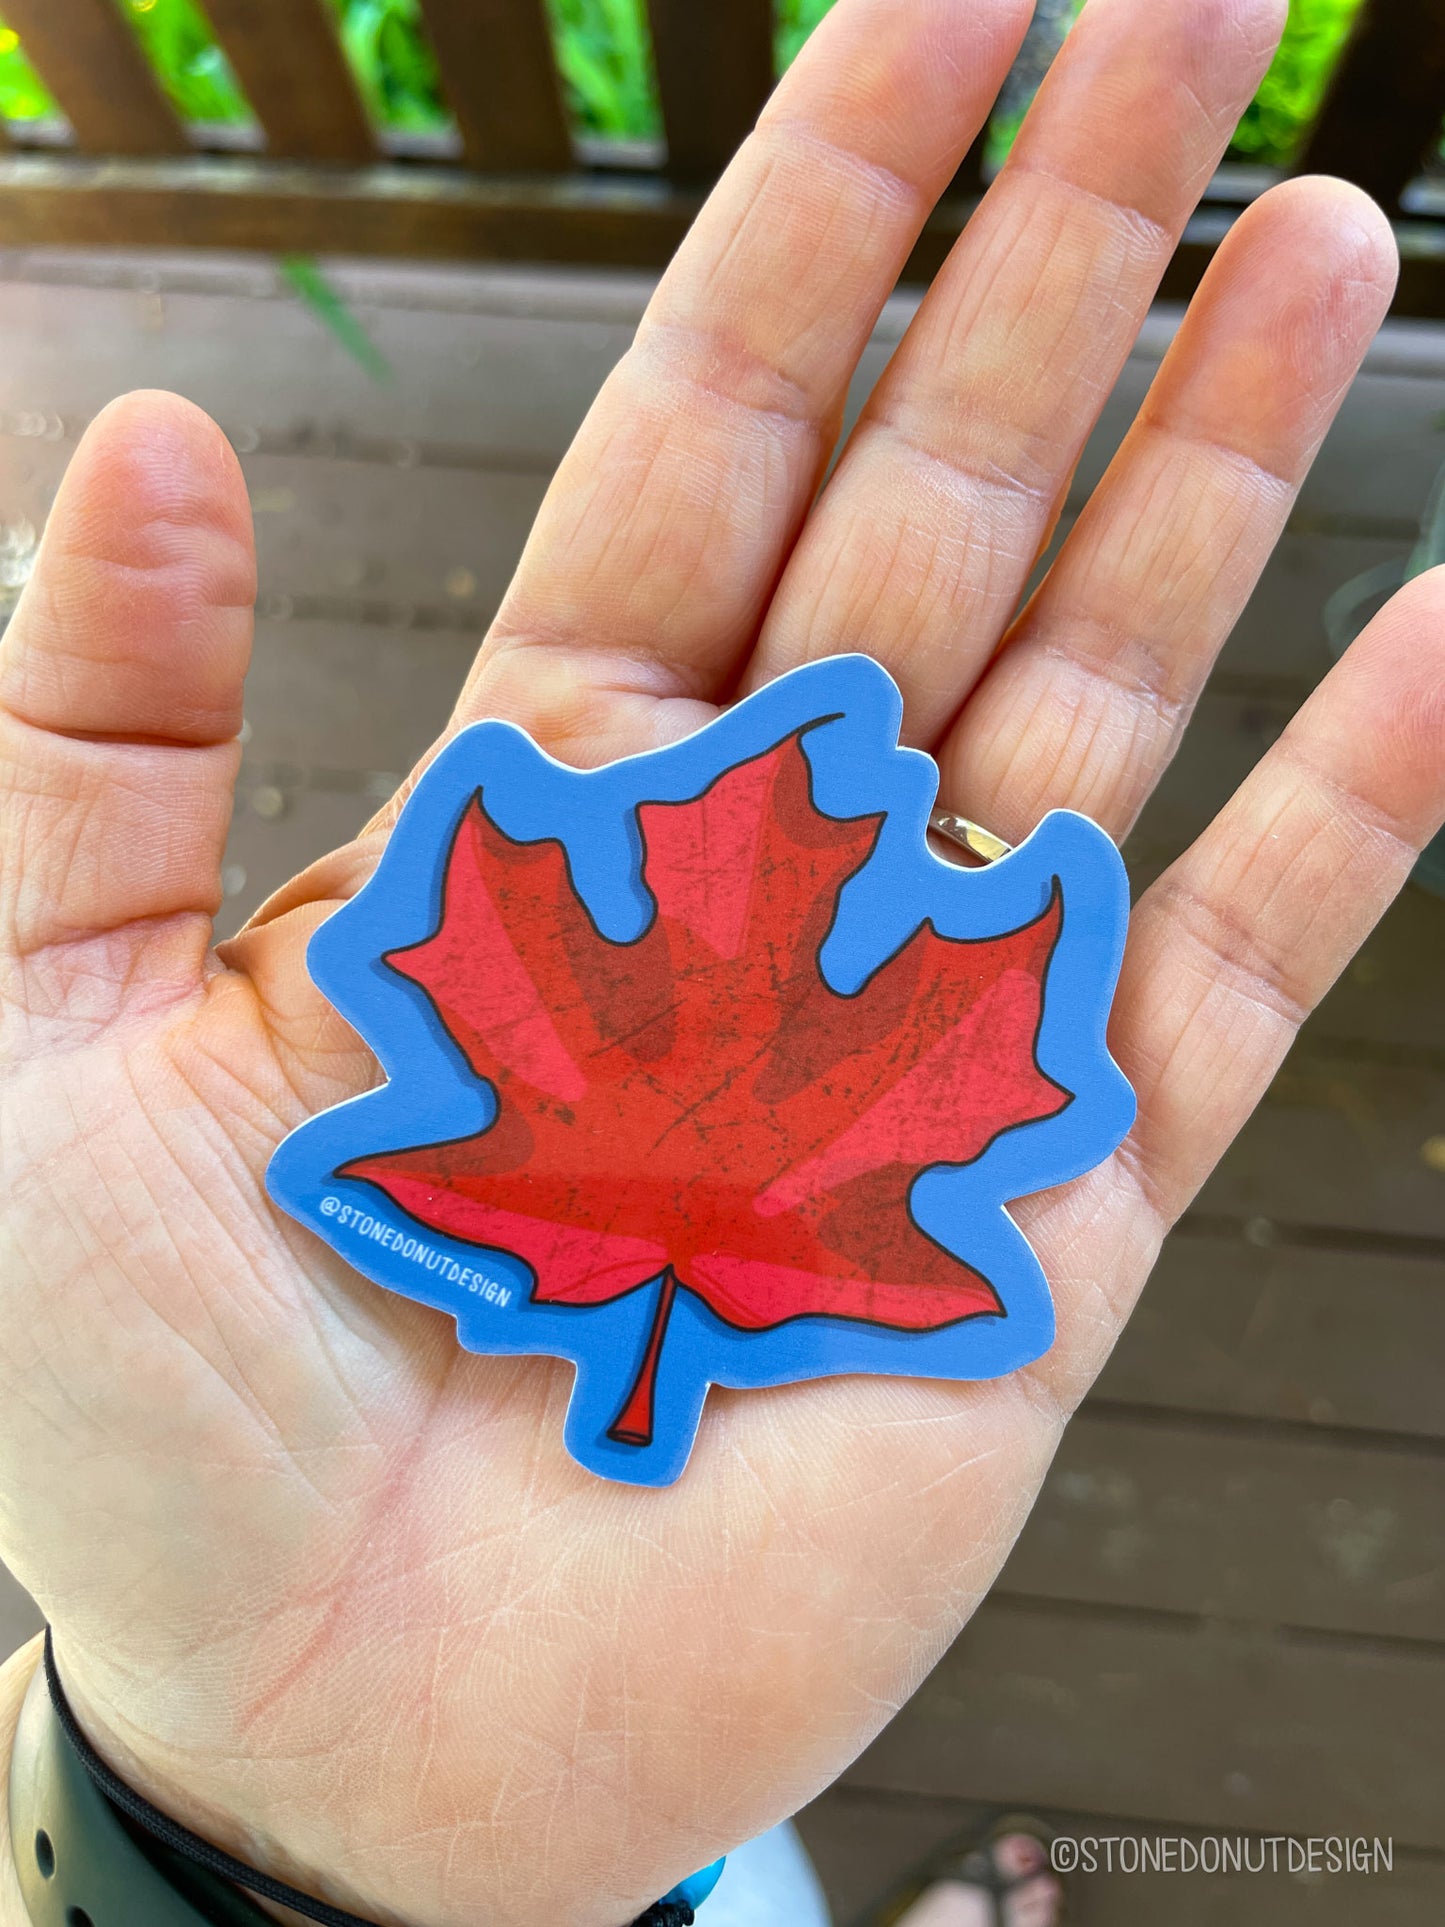 Red Maple Leaf Vinyl Sticker